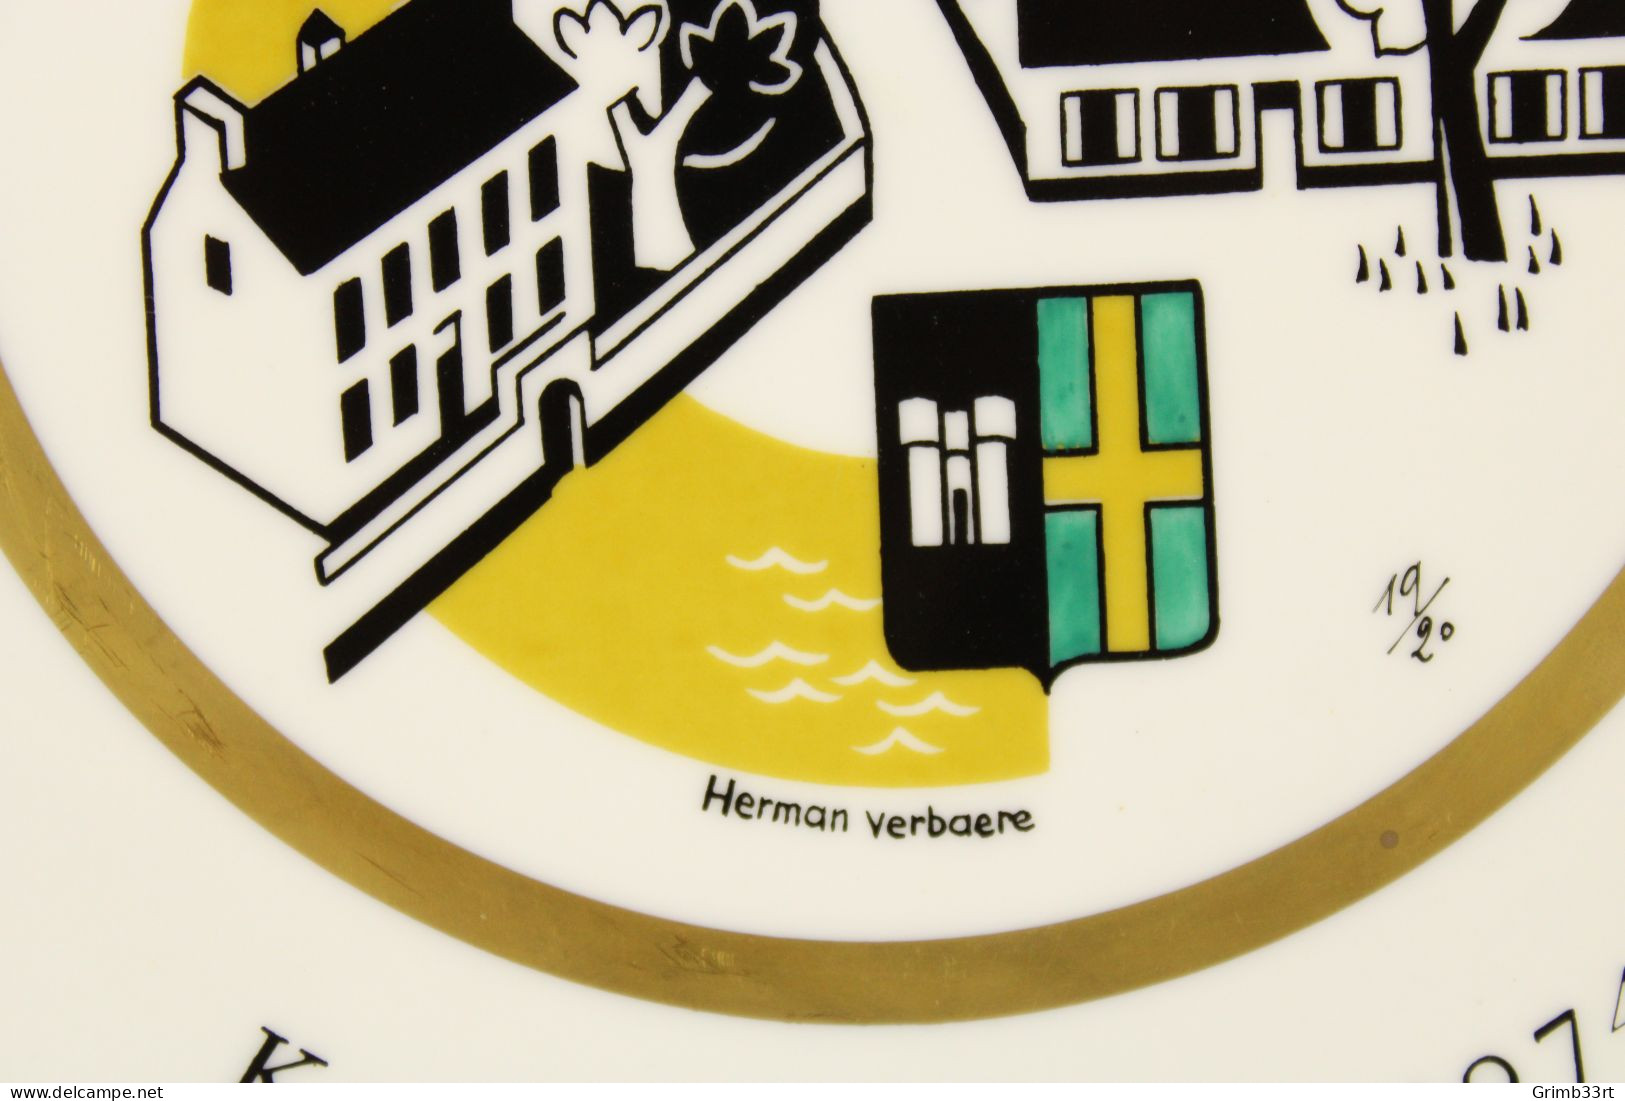 Deurle - Handbooggilde De Harlekijnen - 1974 - Herman Verbaere 19/20 - Sierbord Schuttersgilde - Boogschieten - 25.1 Cm - Bogenschiessen